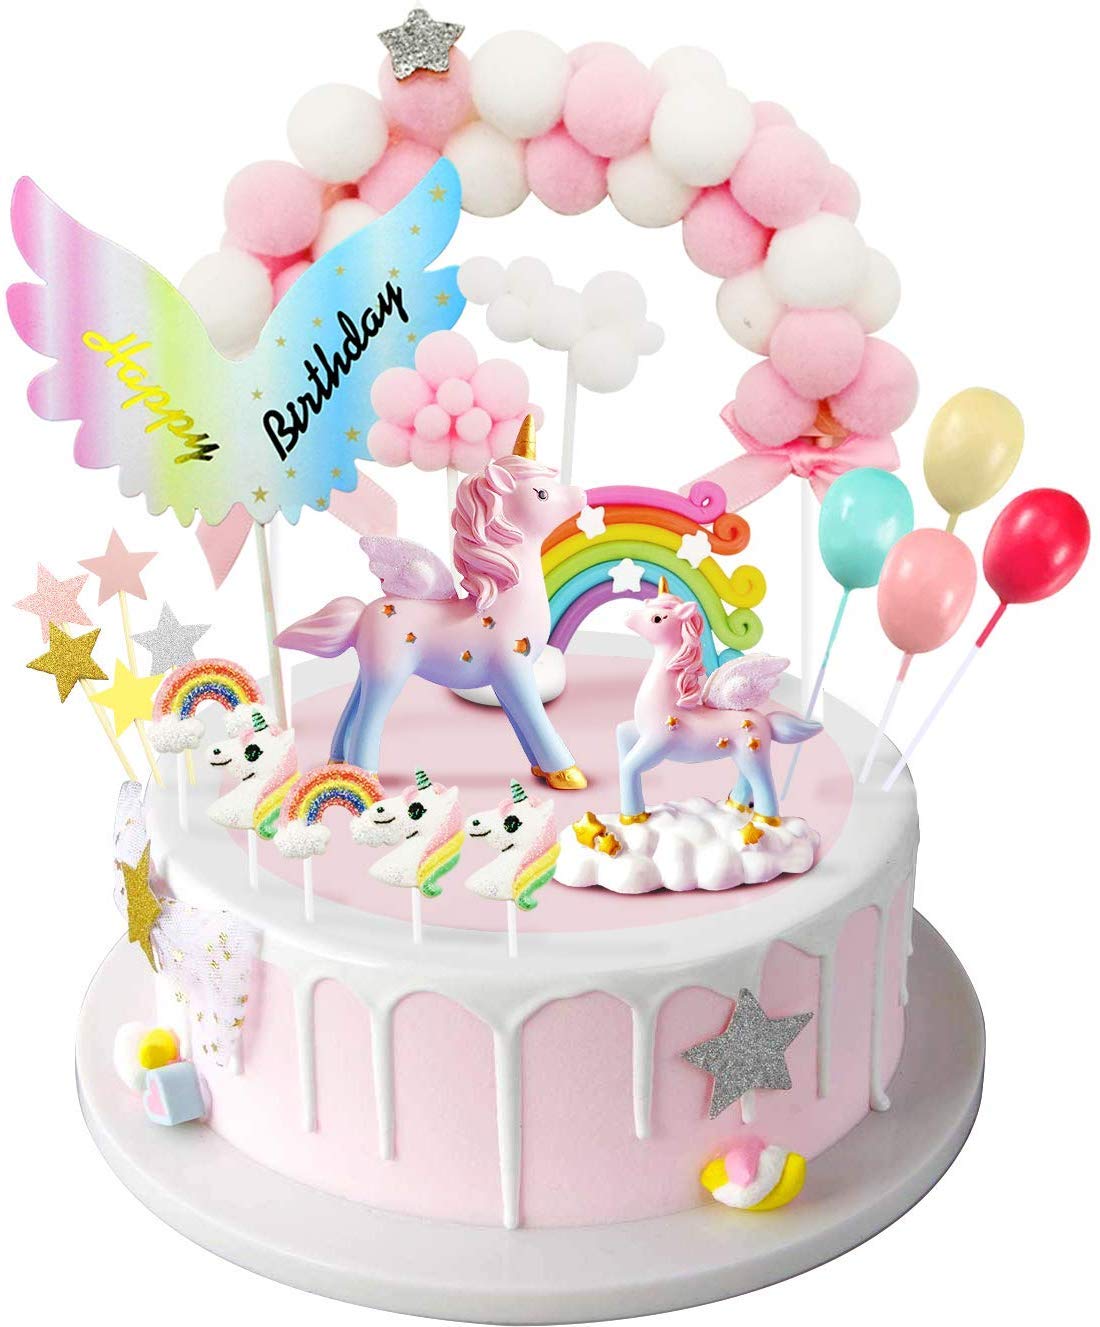 My fat unicorn cake 😄😍 : r/cakedecorating